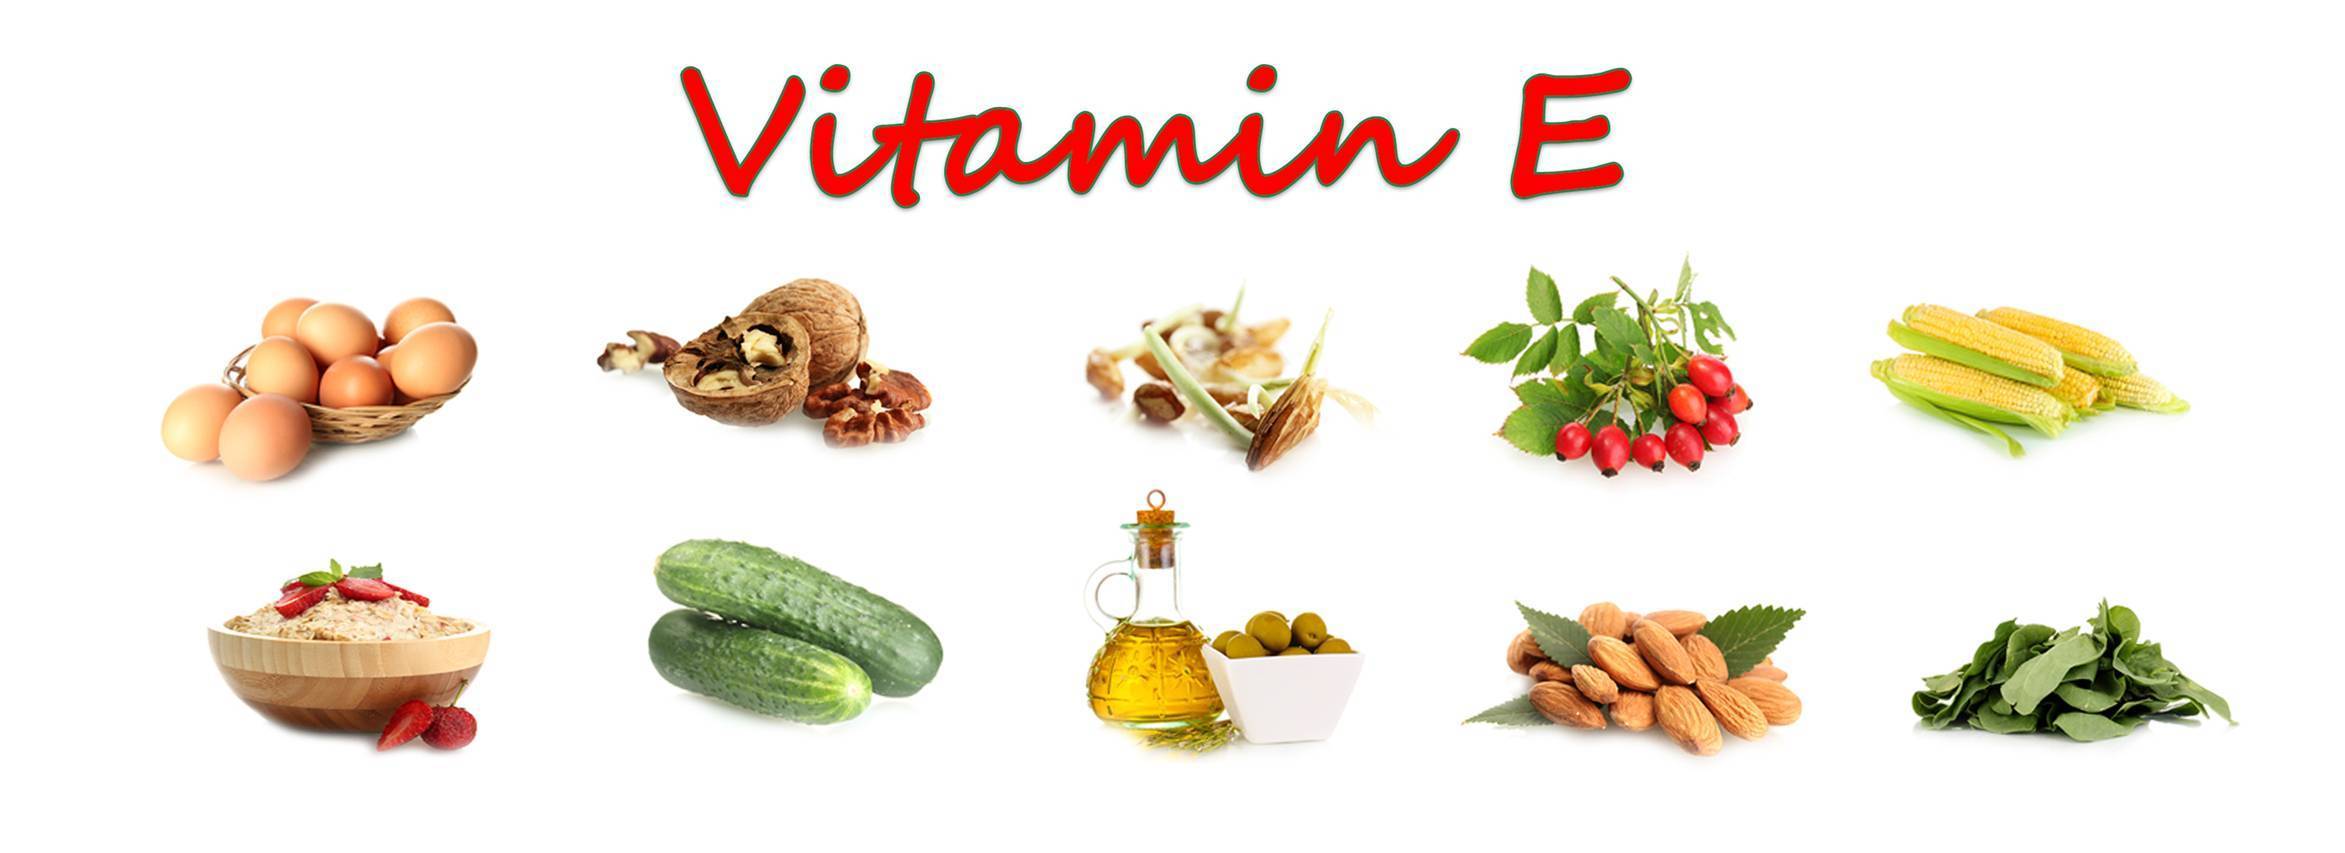 Где витамин е в каких продуктах. Витамин е в каких продуктах. Витамин е в каких продуктах содержится витамин е. В каких продуктах содержится витамин а и витамин е. Витамин а продукты содержащие витамин е.